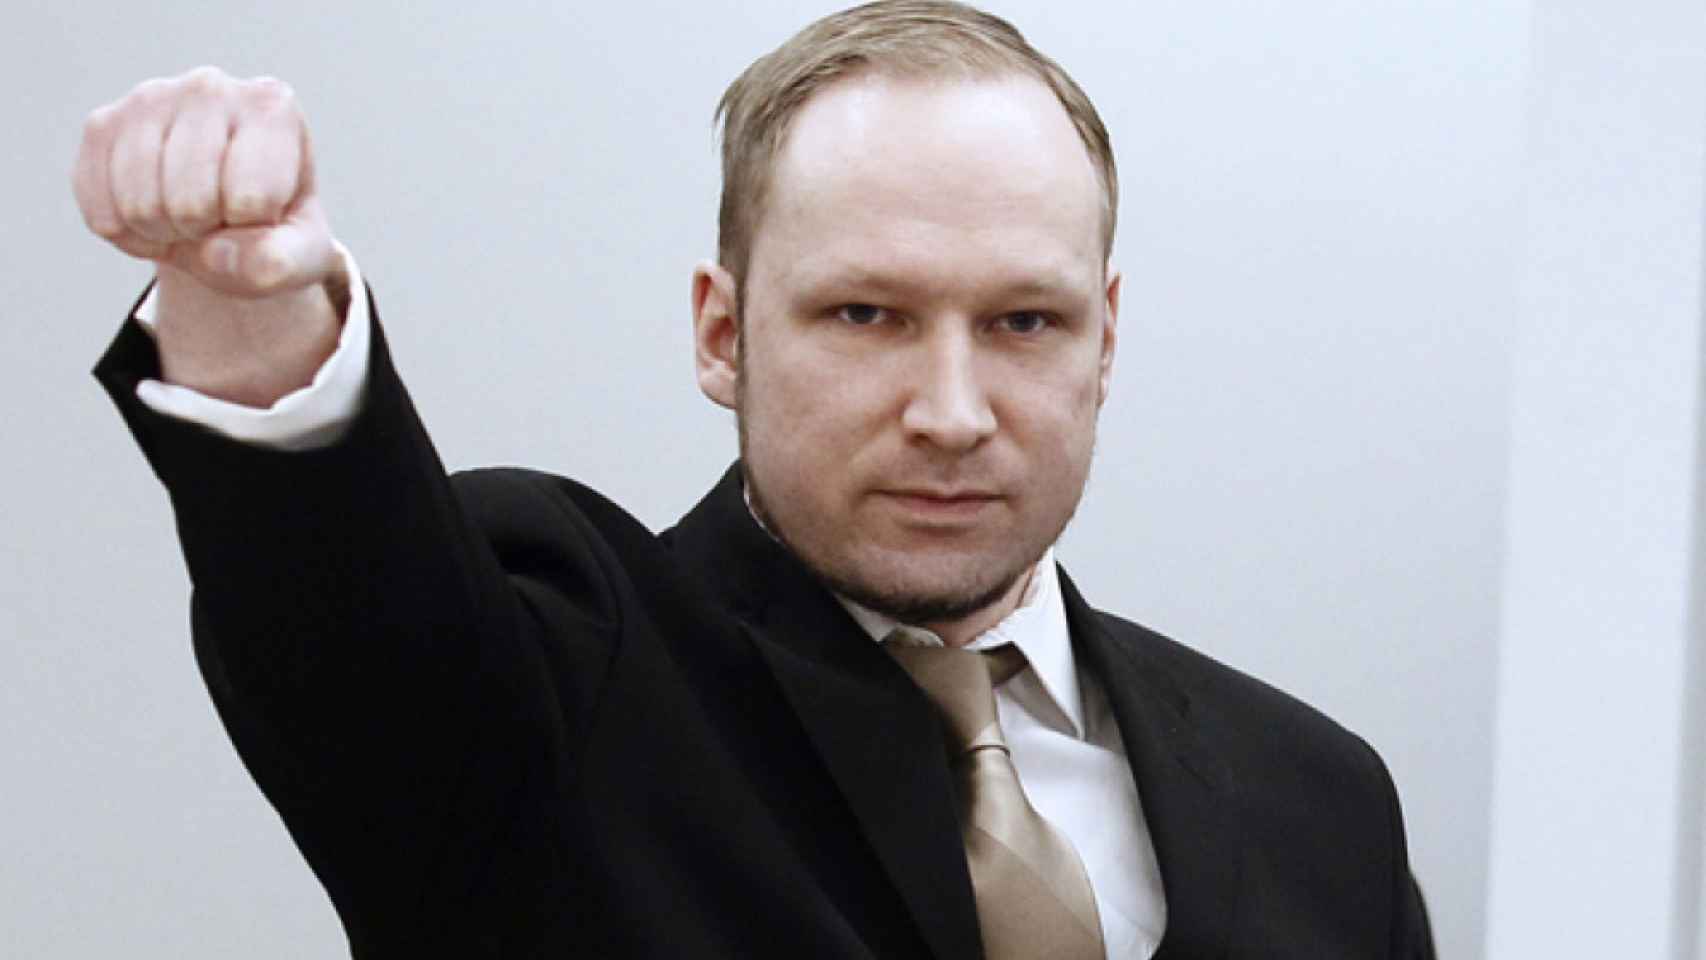 Los mensajes idolatran a terroristas de extrema derecha; entre ellos, Anders Breivik, autor de la matanza de Oslo y Utoya, que se saldó con 77 víctimas mortales.